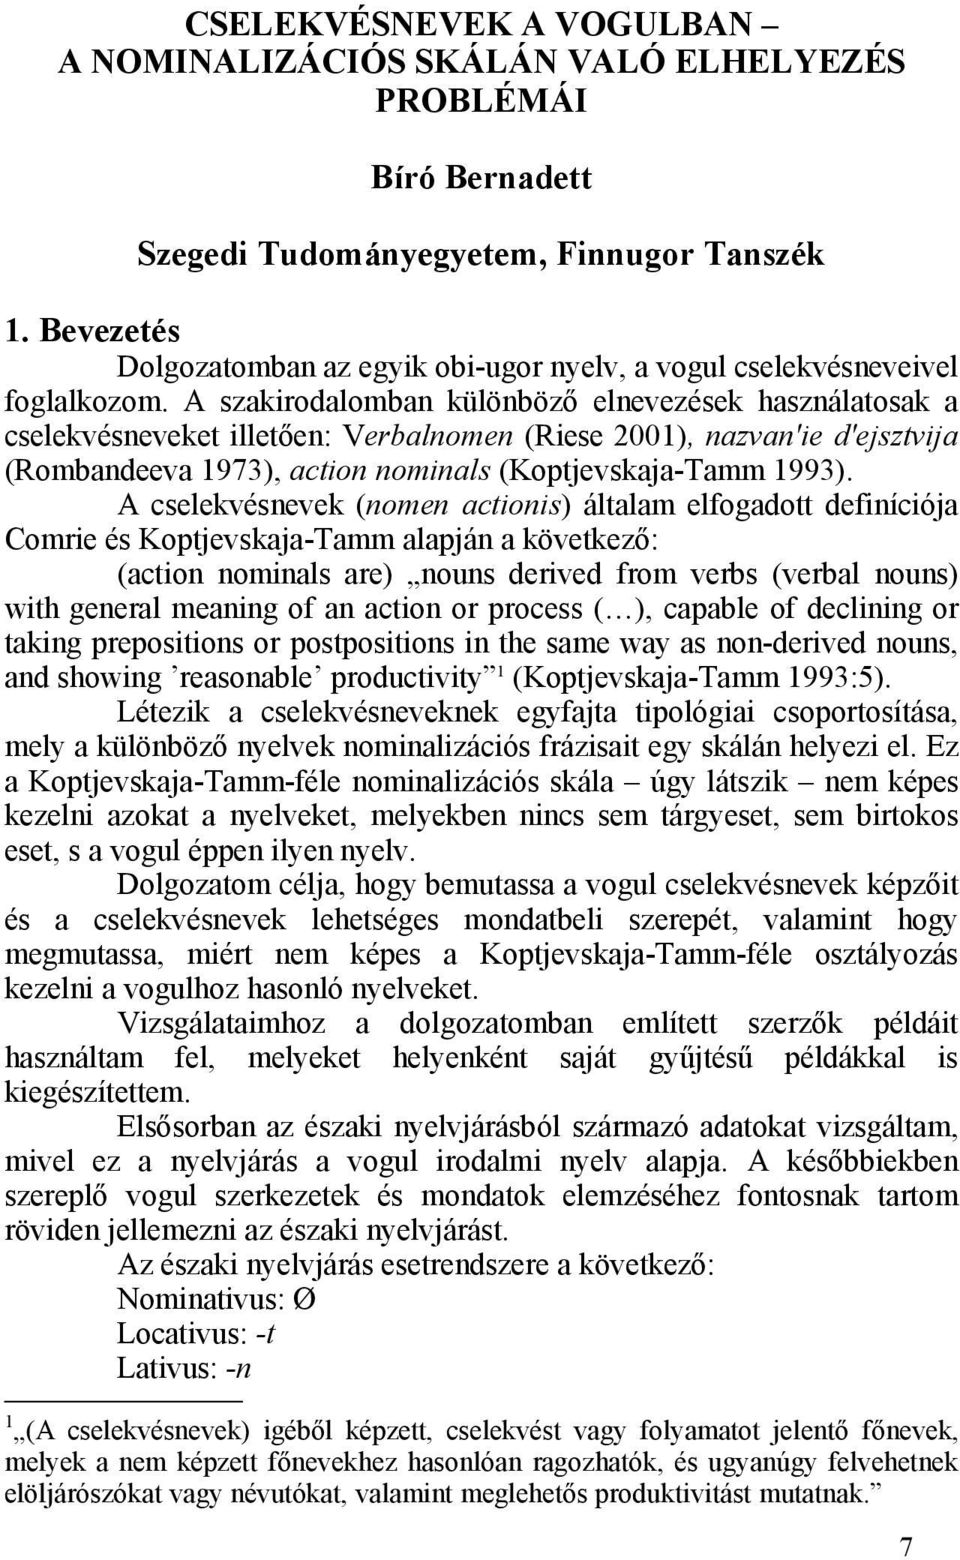 A szakirodalomban különböző elnevezések használatosak a cselekvésneveket illetően: Verbalnomen (Riese 2001), nazvan'ie d'ejsztvija (Rombandeeva 1973), action nominals (Koptjevskaja-Tamm 1993).